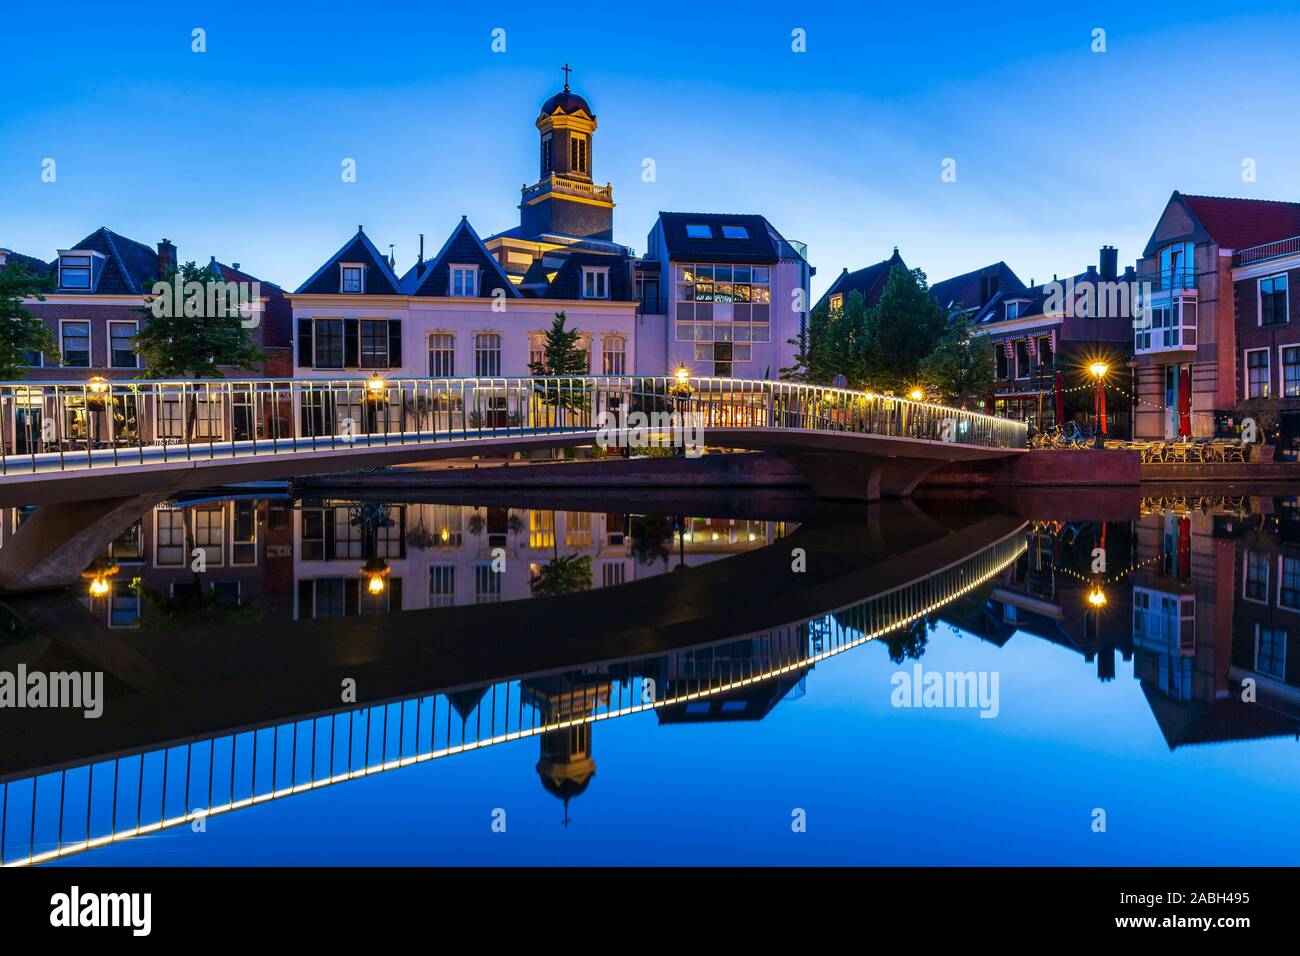 Olandese tradizionale cultura architettura case e canal durante le ore di colore blu. E storica cittadina turistica Leiden, Paesi Bassi Foto Stock